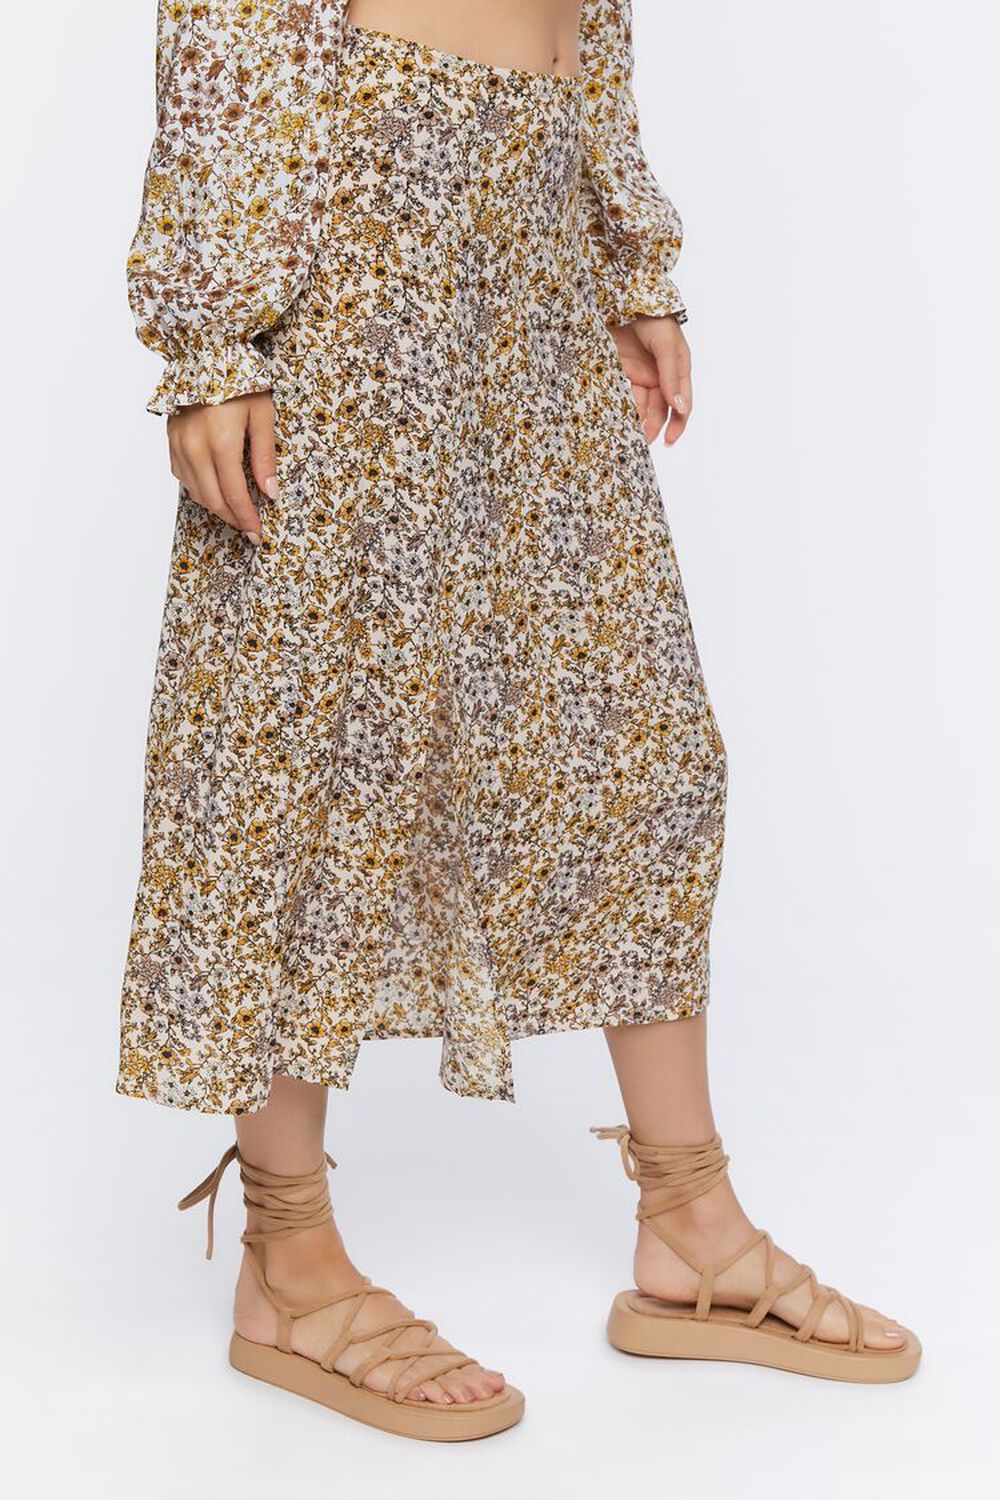 TAUPE/MULTI Floral Print Midi Skirt, image 3